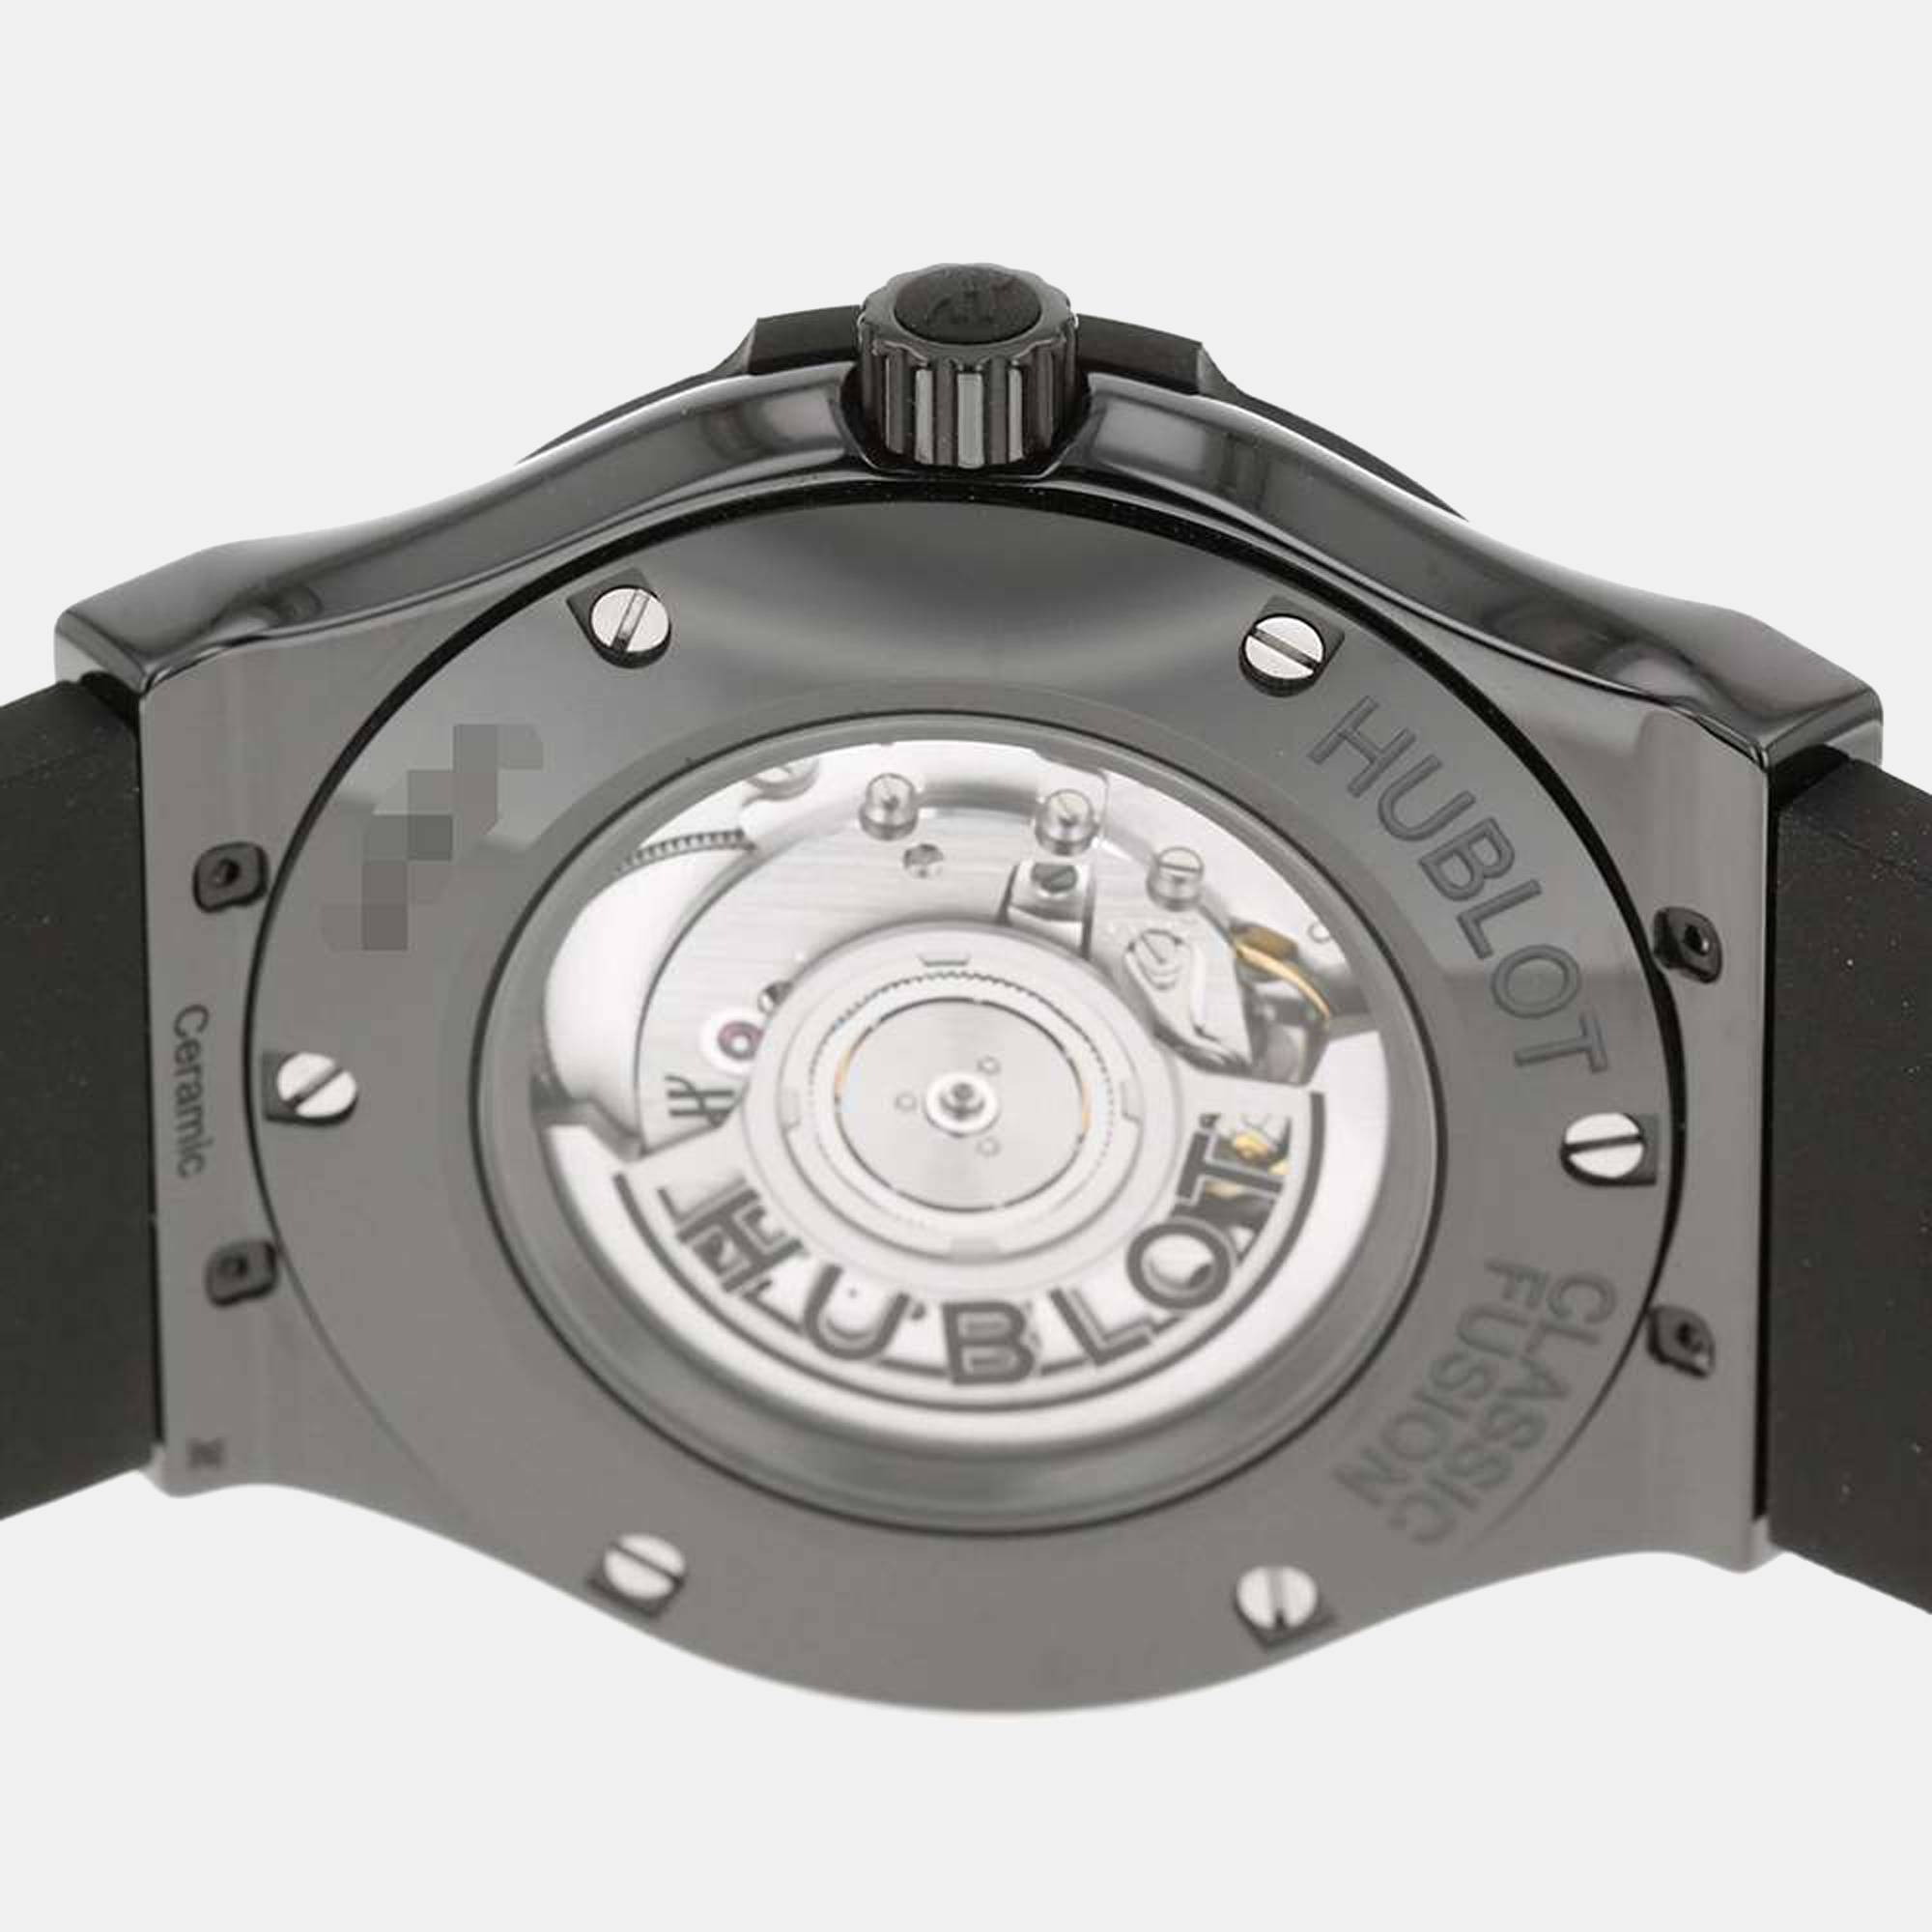 Hublot Black Ceramic Classic Fusion 511.CM.1171.RX Automatic Men's Wristwatch 45 Mm